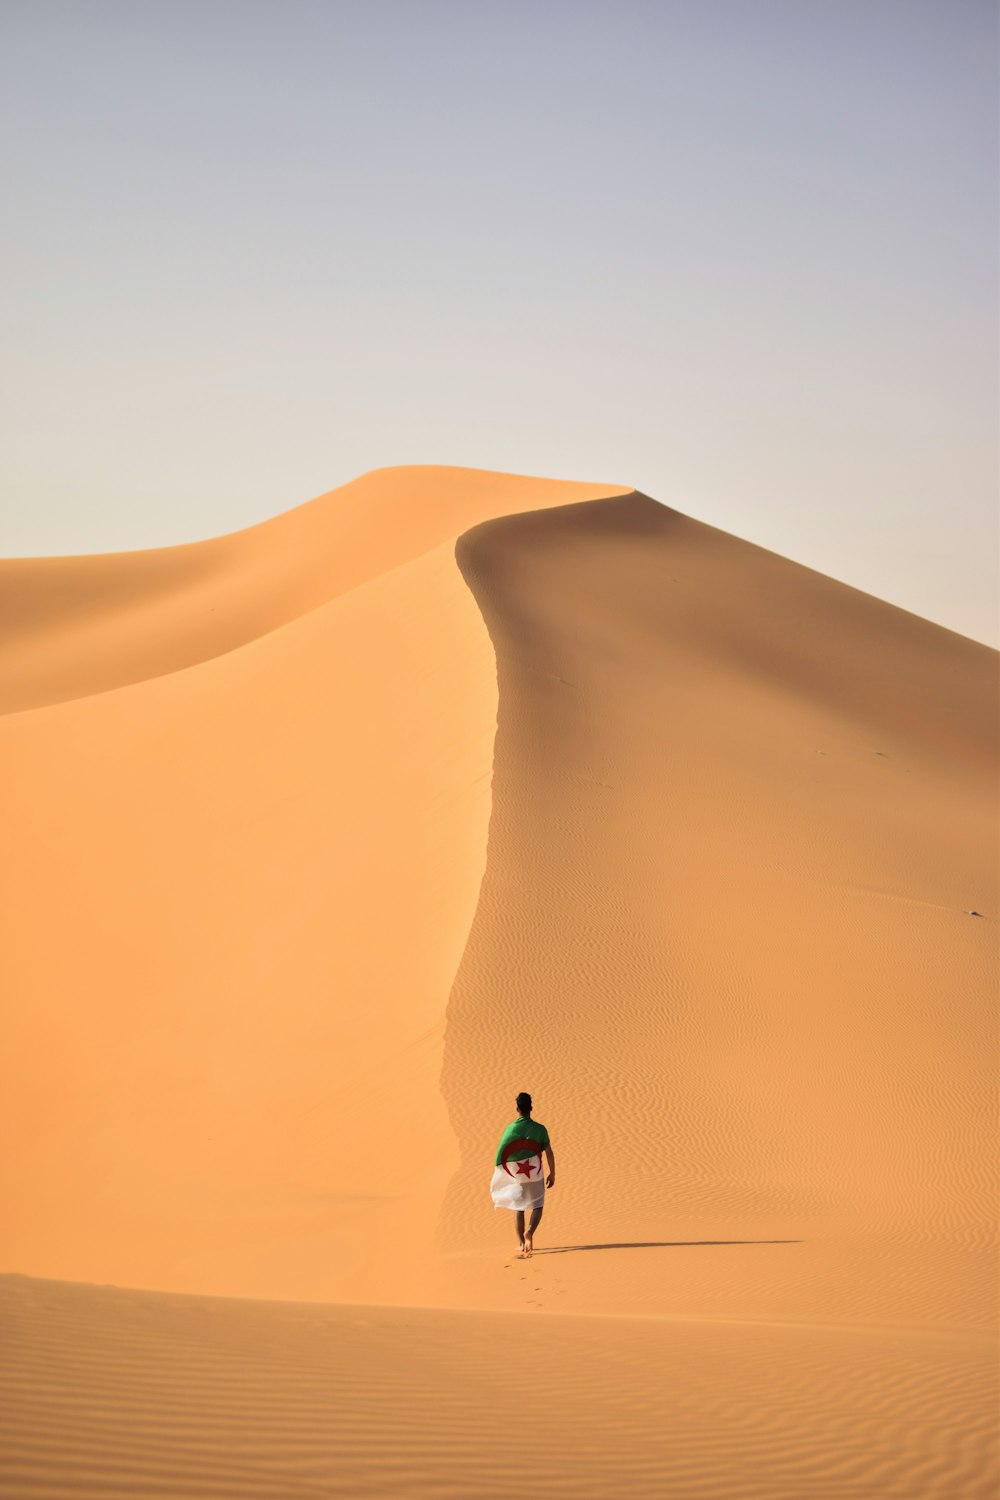 a man walking across a sandy desert with a surfboard